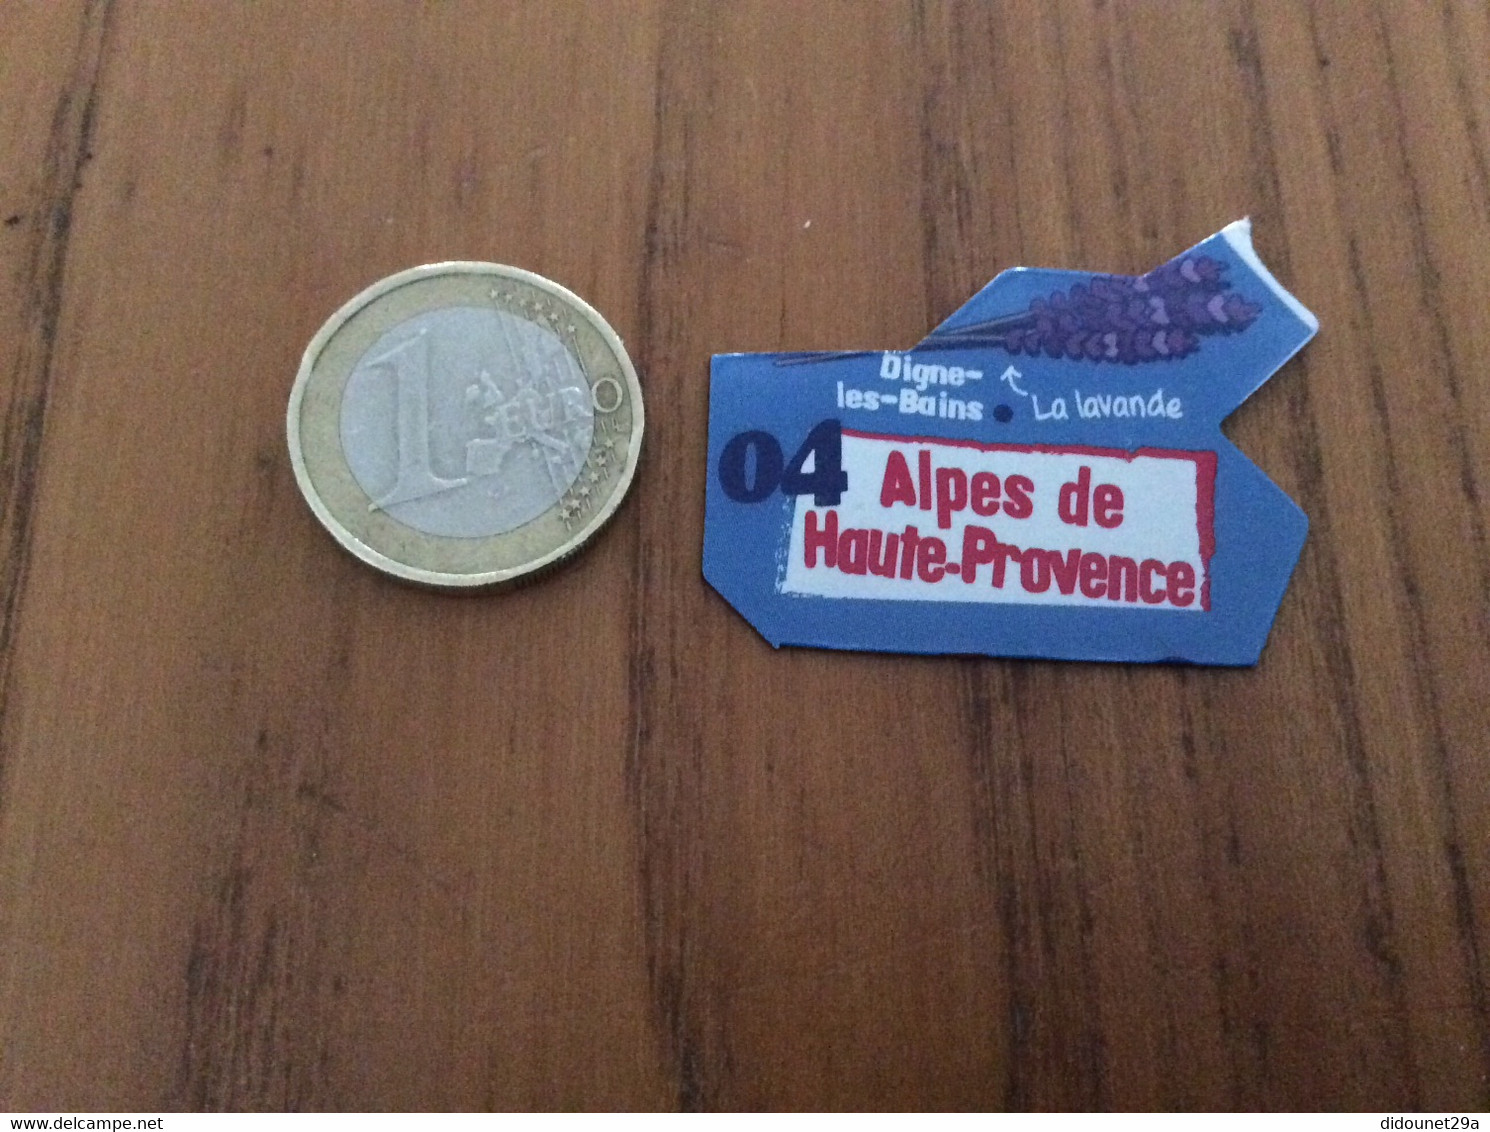 Magnet * Département Le Gaulois "04 Alpes De Haute-Provence" (La Lavande) - Magnets